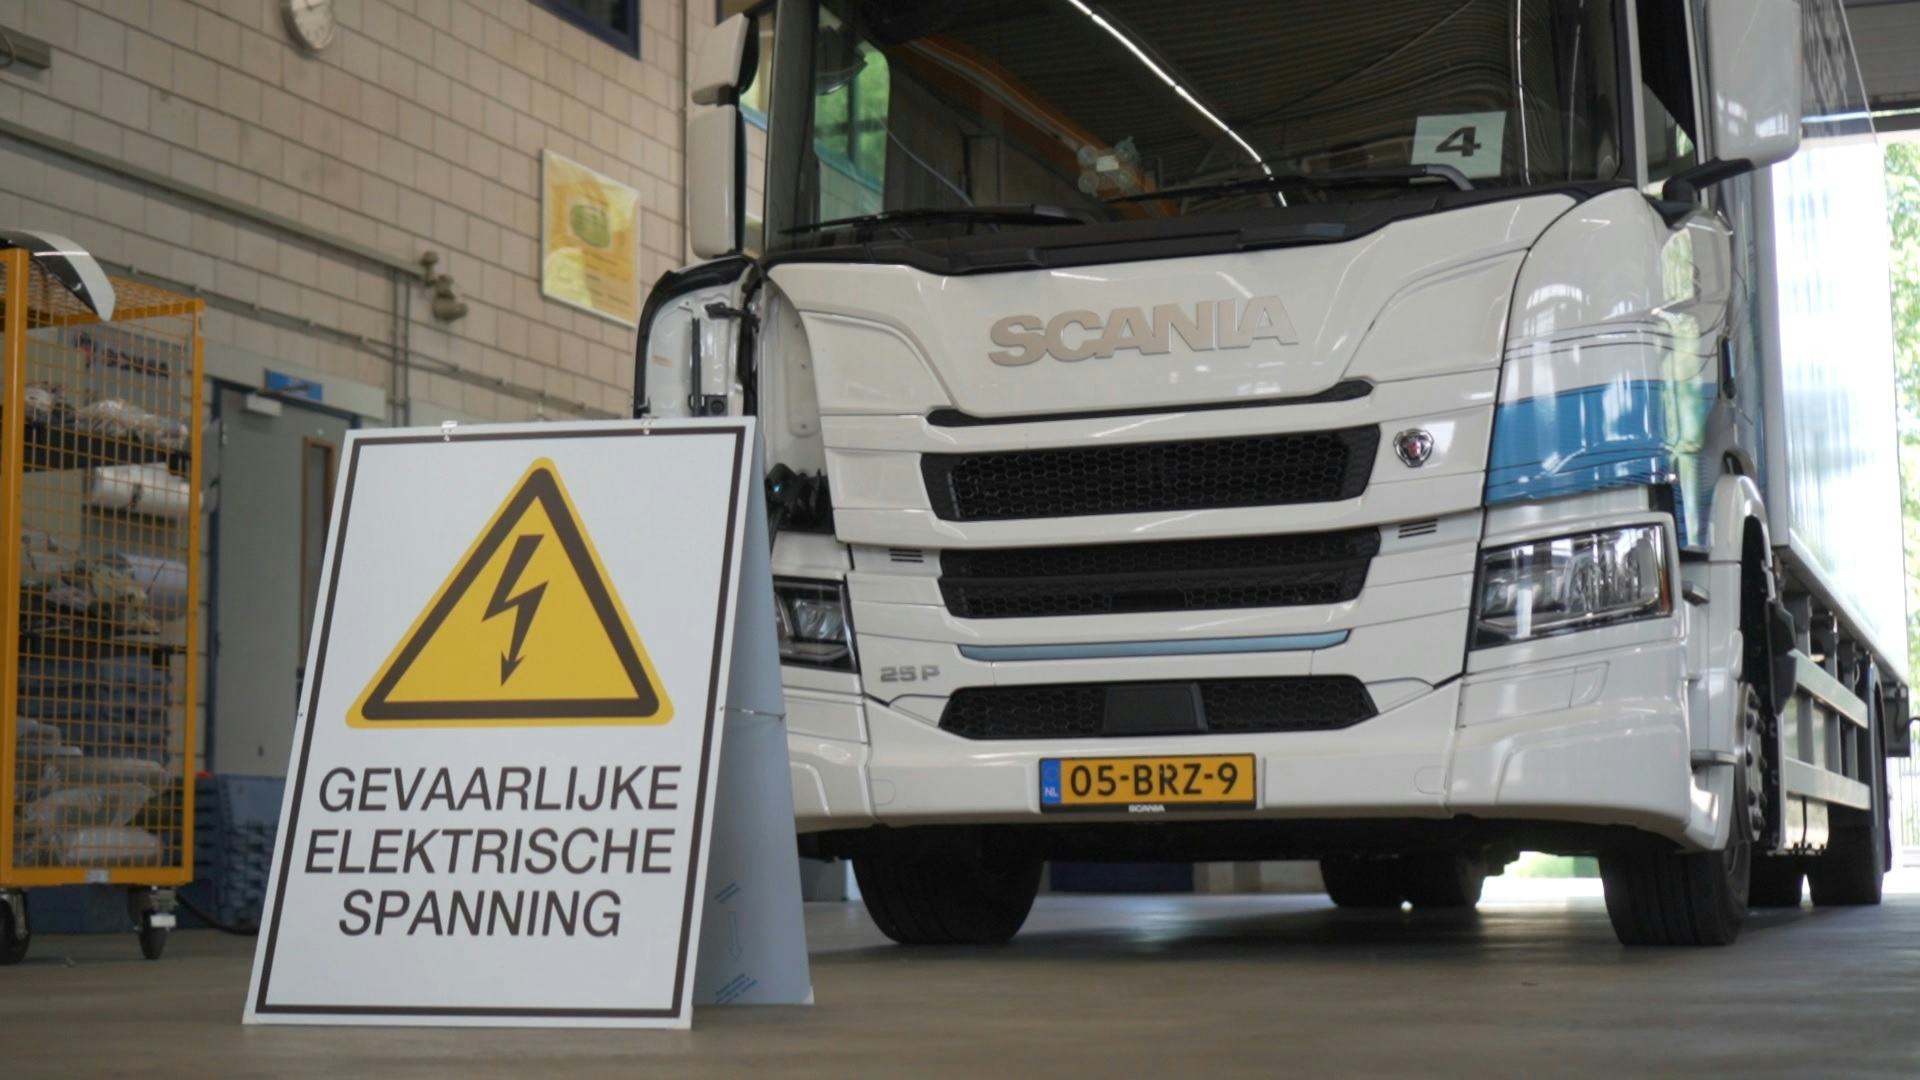 Scania bereidt werkplaatsen voor op e-trucks